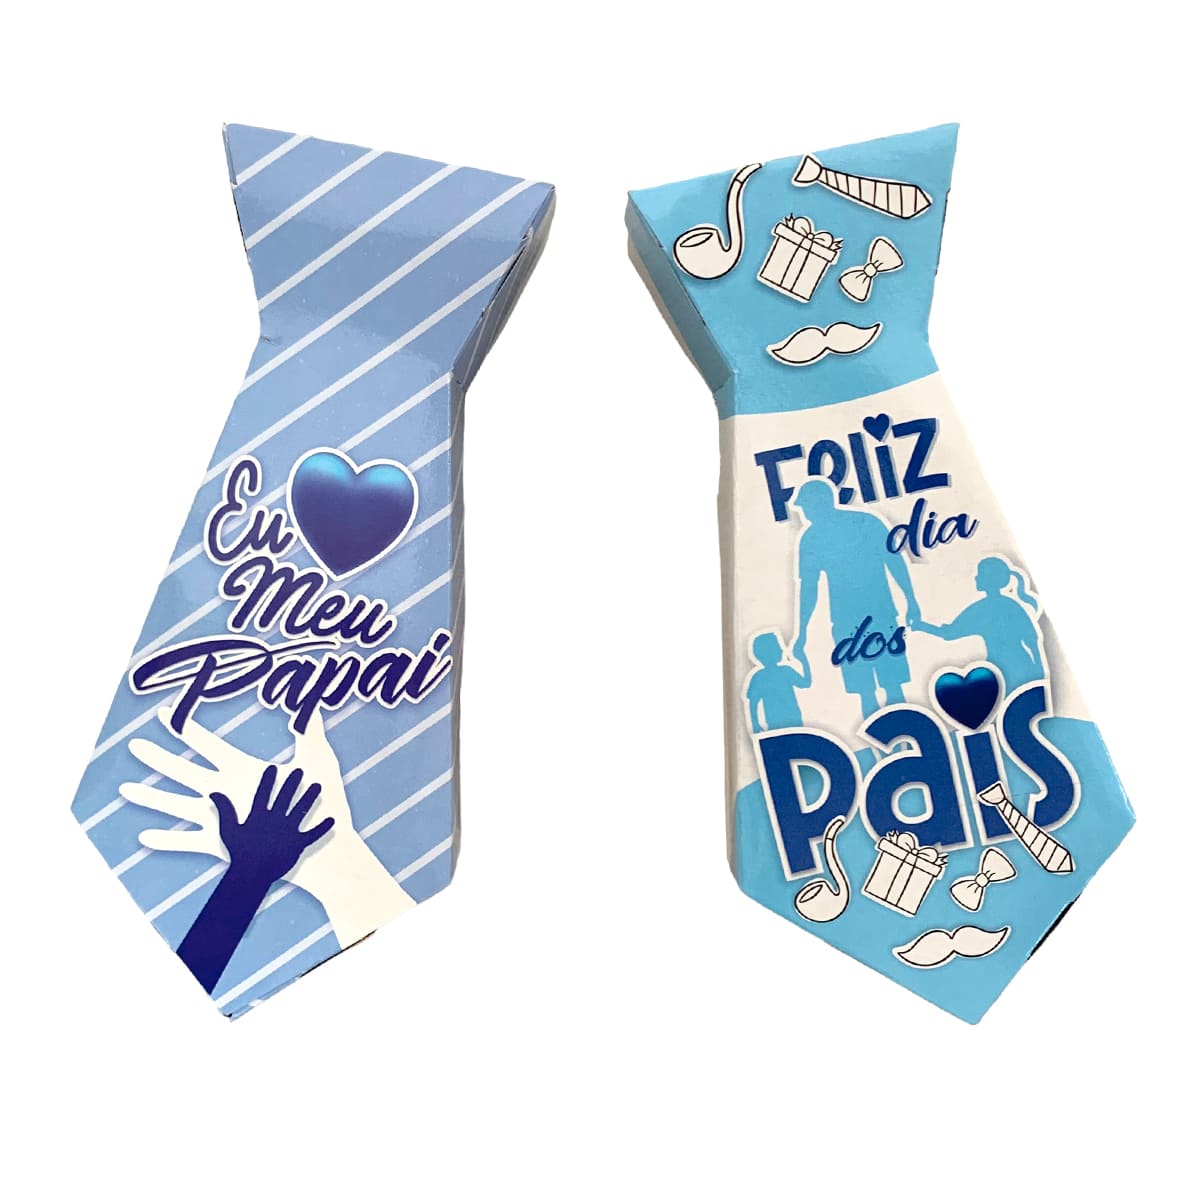 Caixinha Decorativa Presenteável Gravata Dia dos Pais